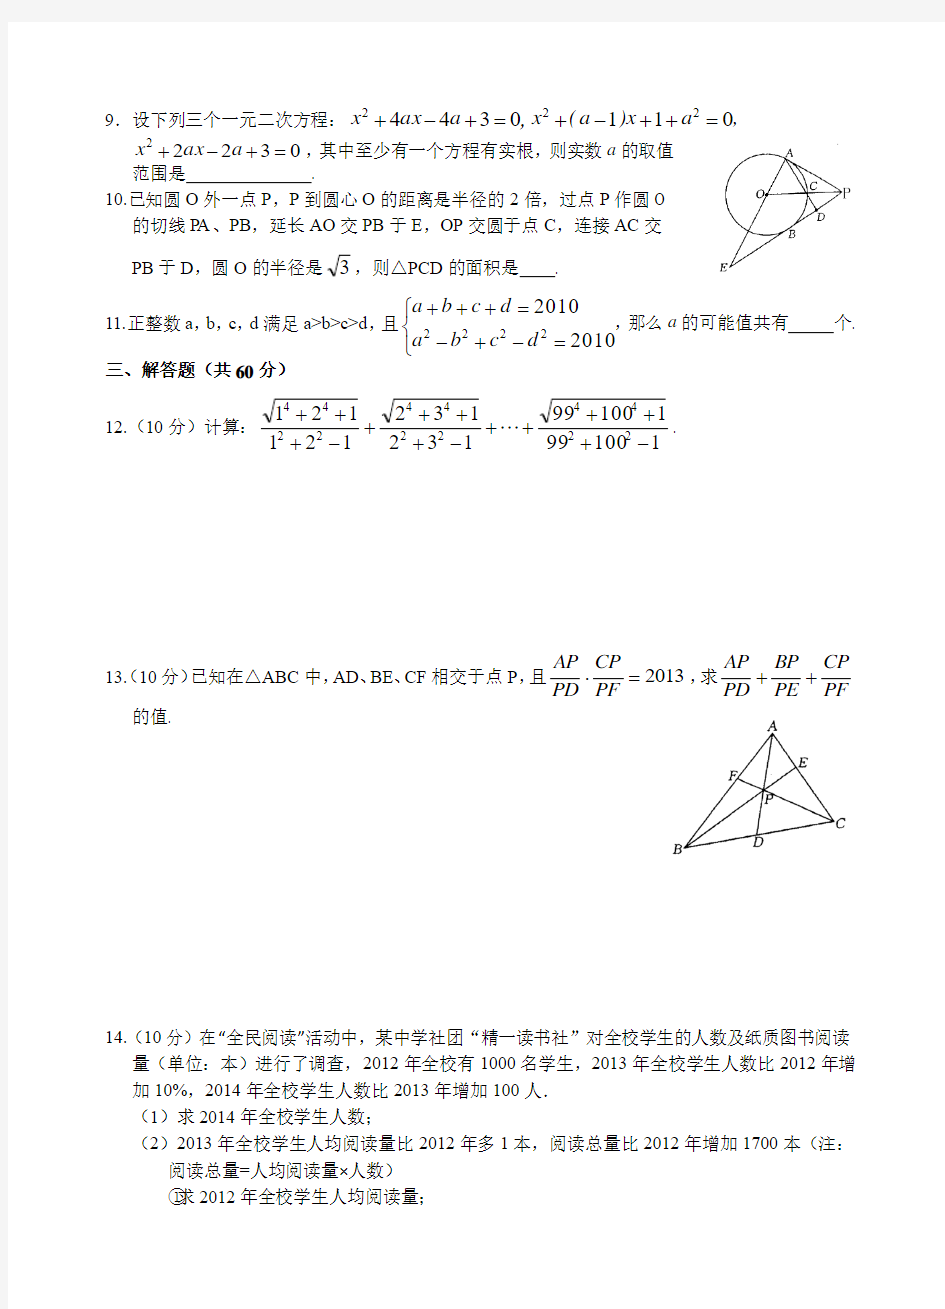 黄冈中学2015年理科实验班预录模拟试题数学A卷及答案